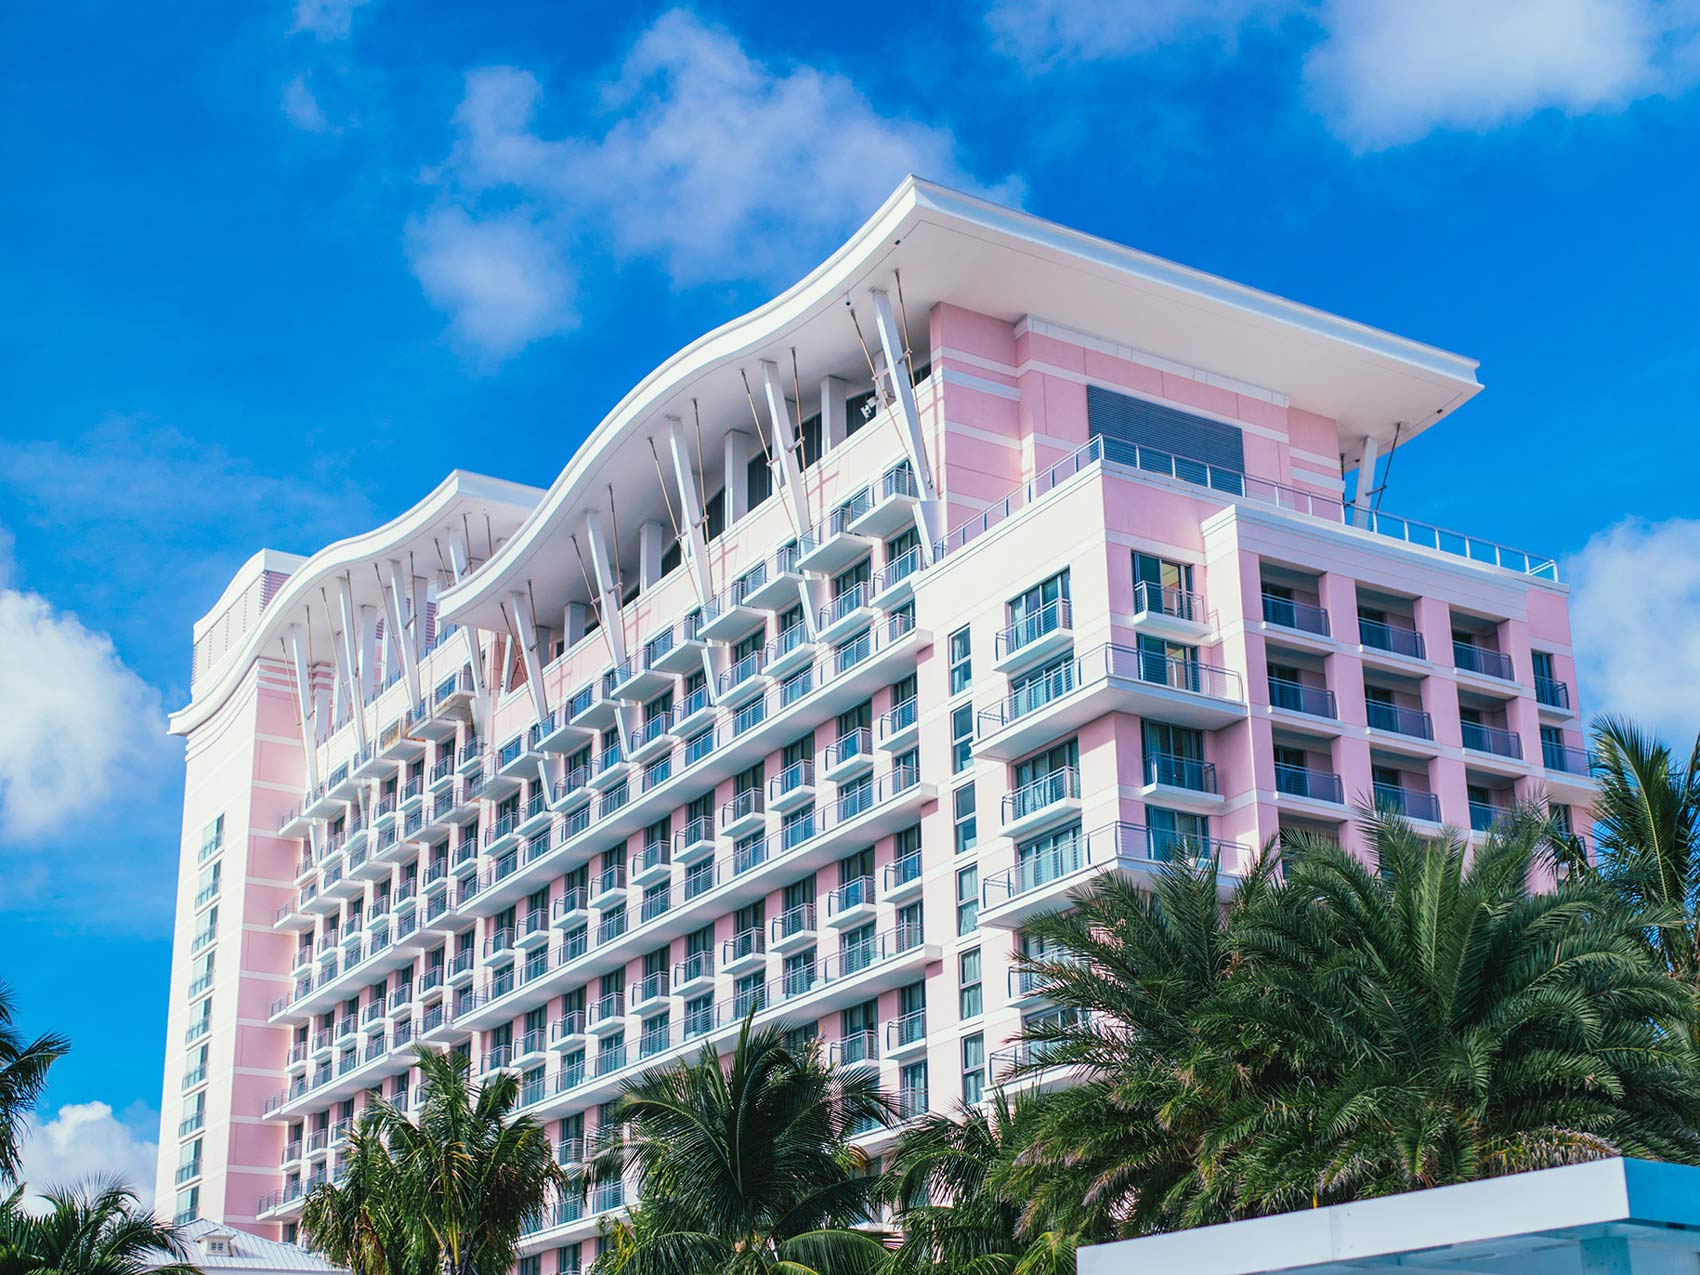 Extérieur d'un bâtiment rose, l'hôtel SLS Baha Mar, avec un ciel bleu en arrière-plan.